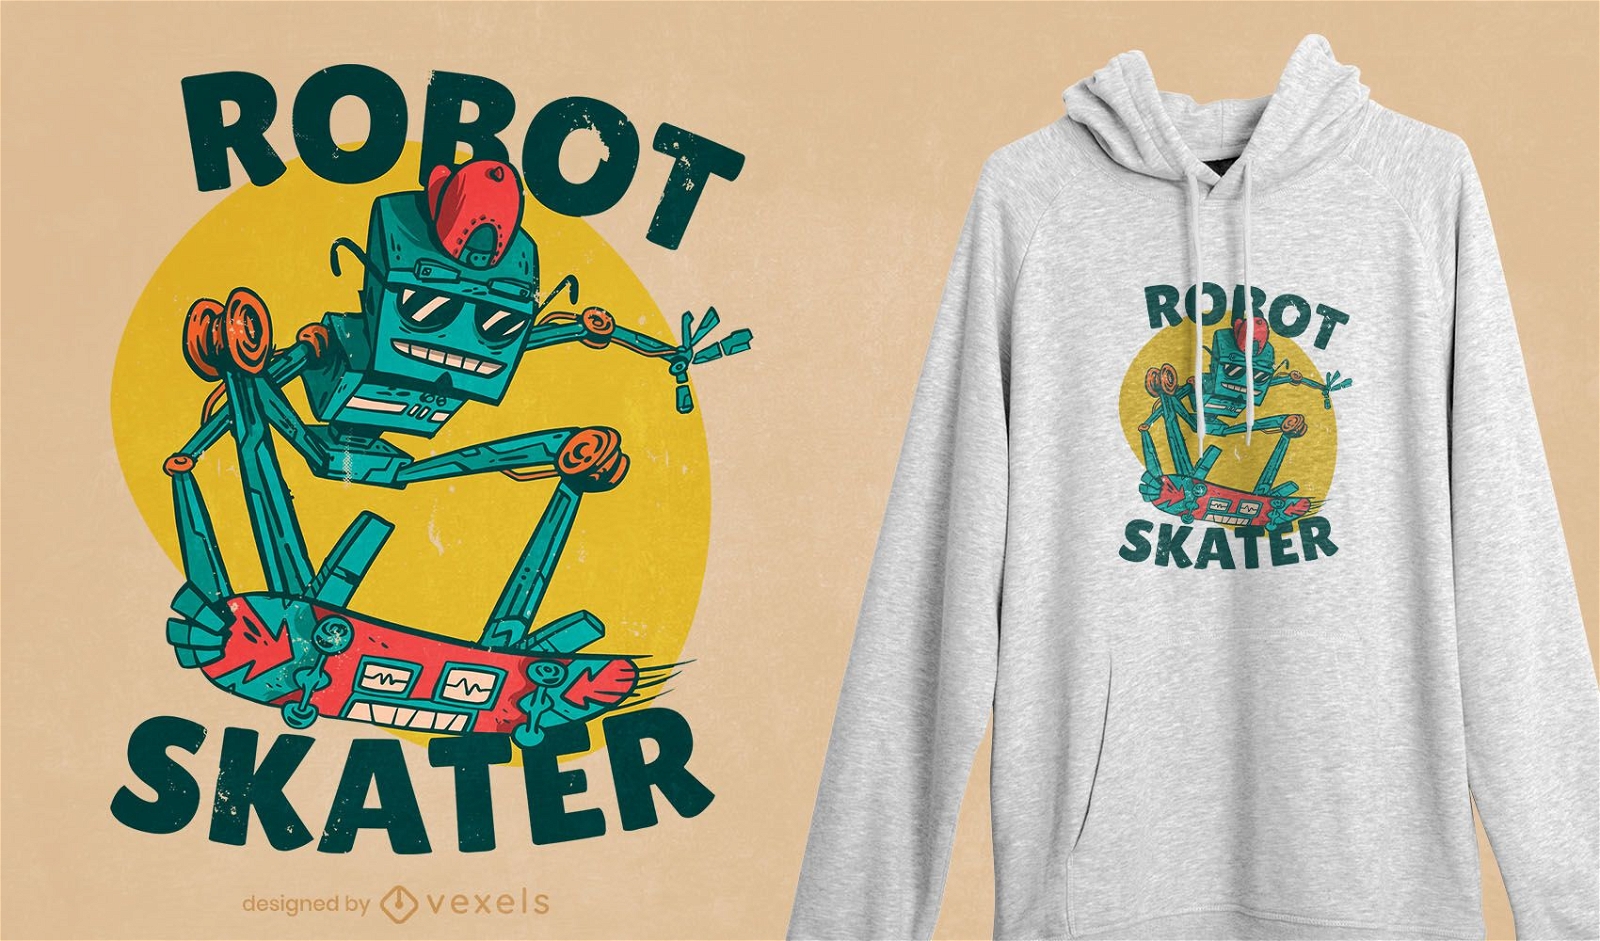 Robot skater t-shirt design